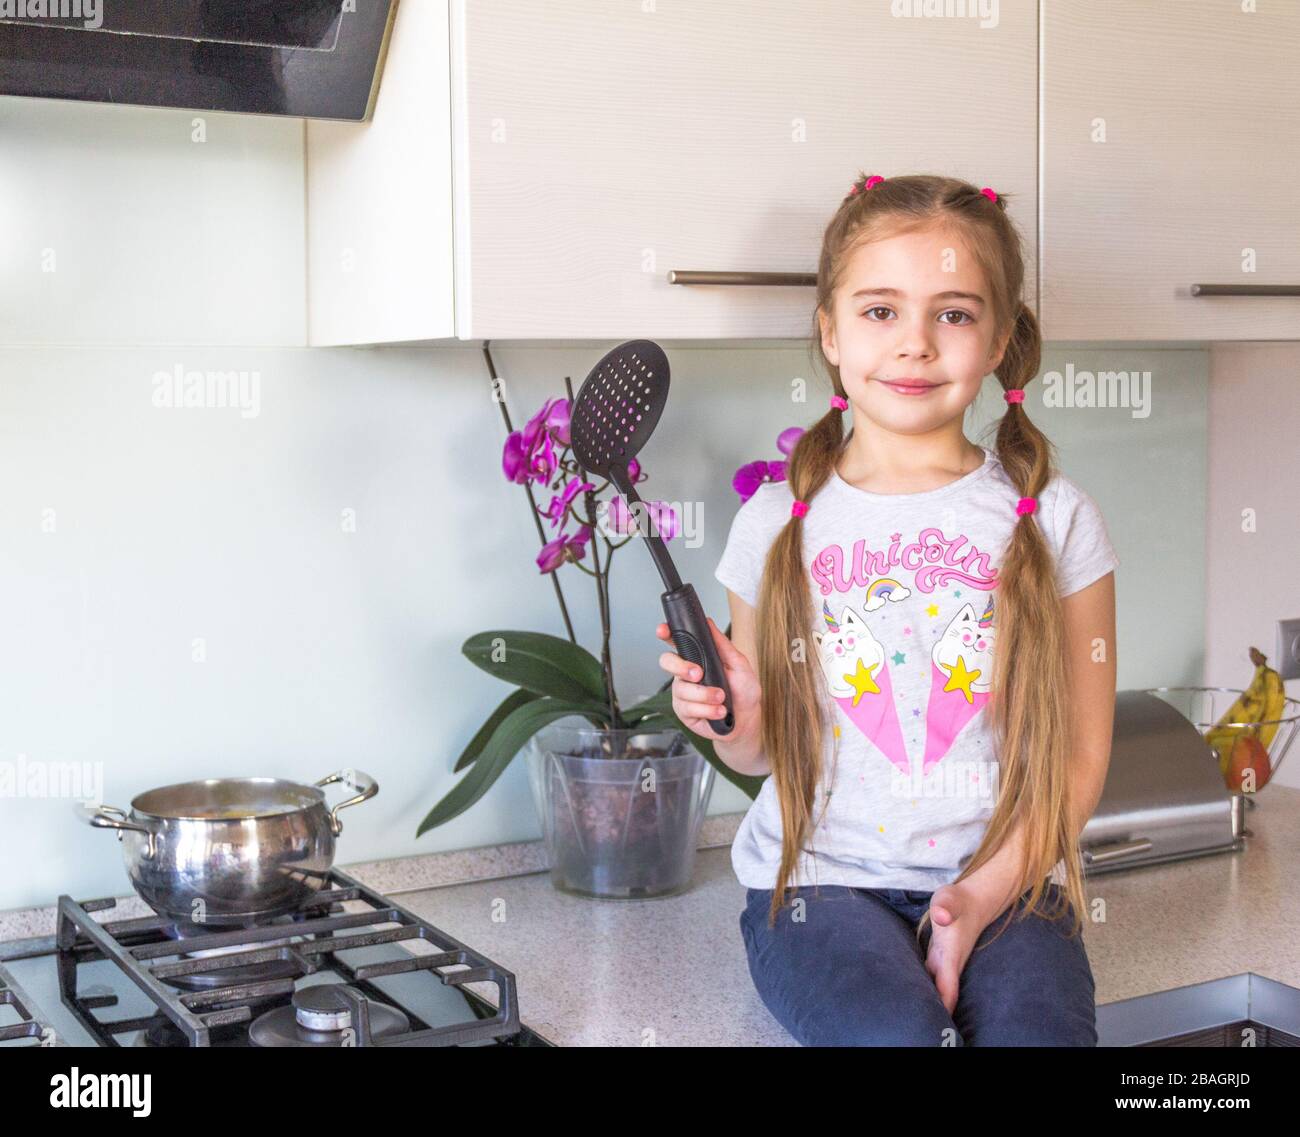 Petite fille assise sur la cuisine et se préparant à cuisiner. Concept de quarantaine du coronavirus. Restez à la maison. Banque D'Images